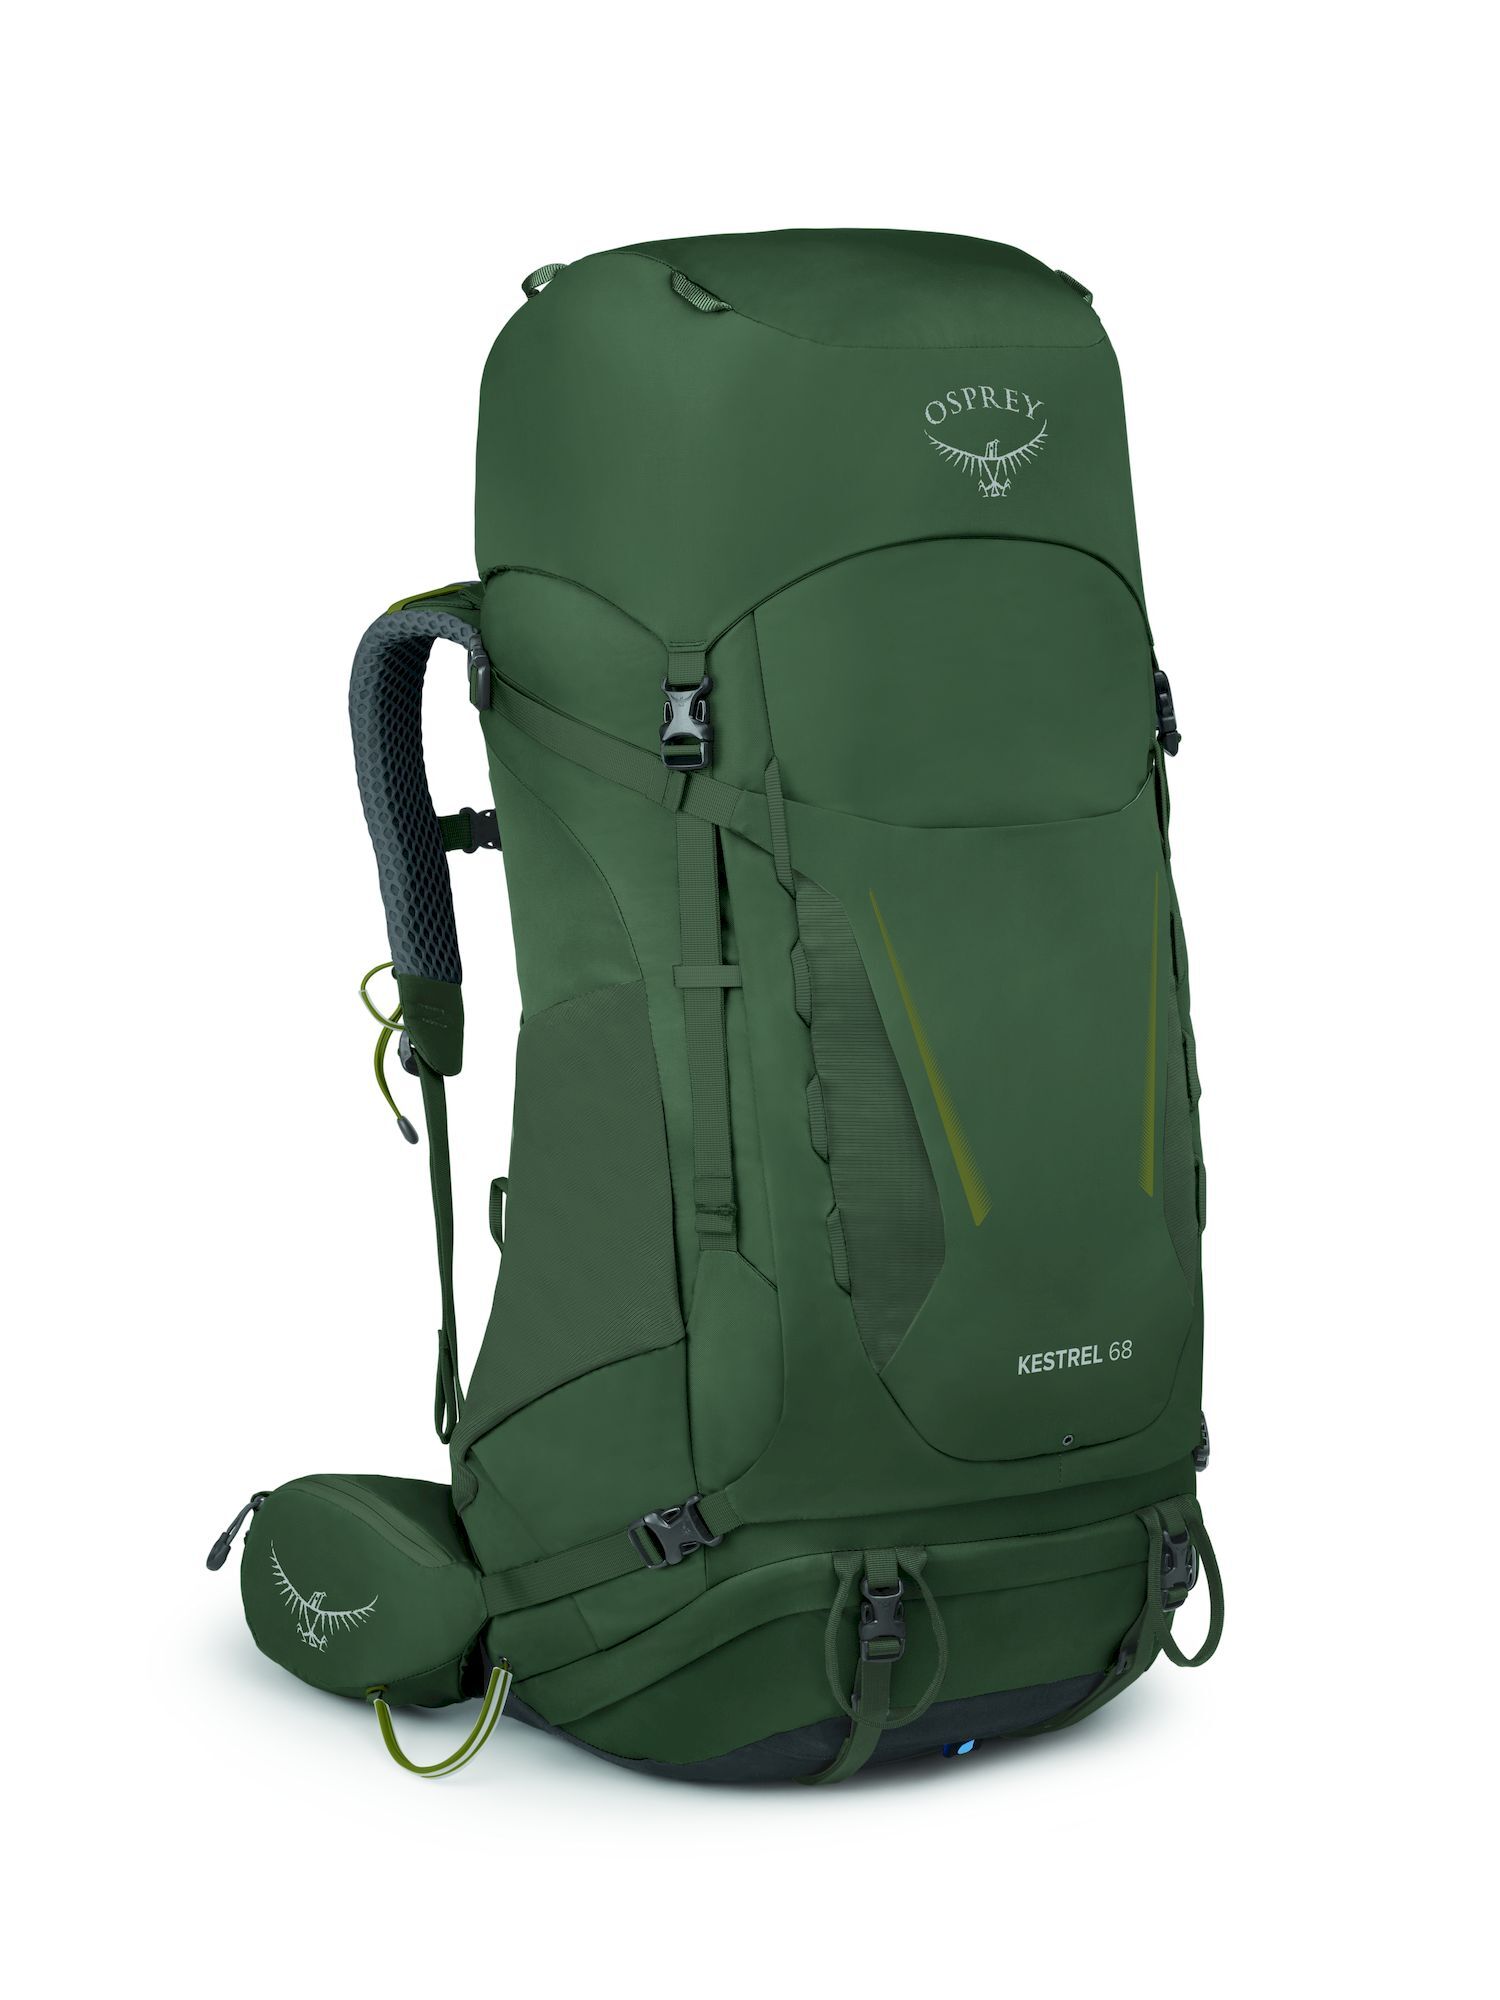 Osprey Kestrel 68 - Plecak trekkingowy meski | Hardloop